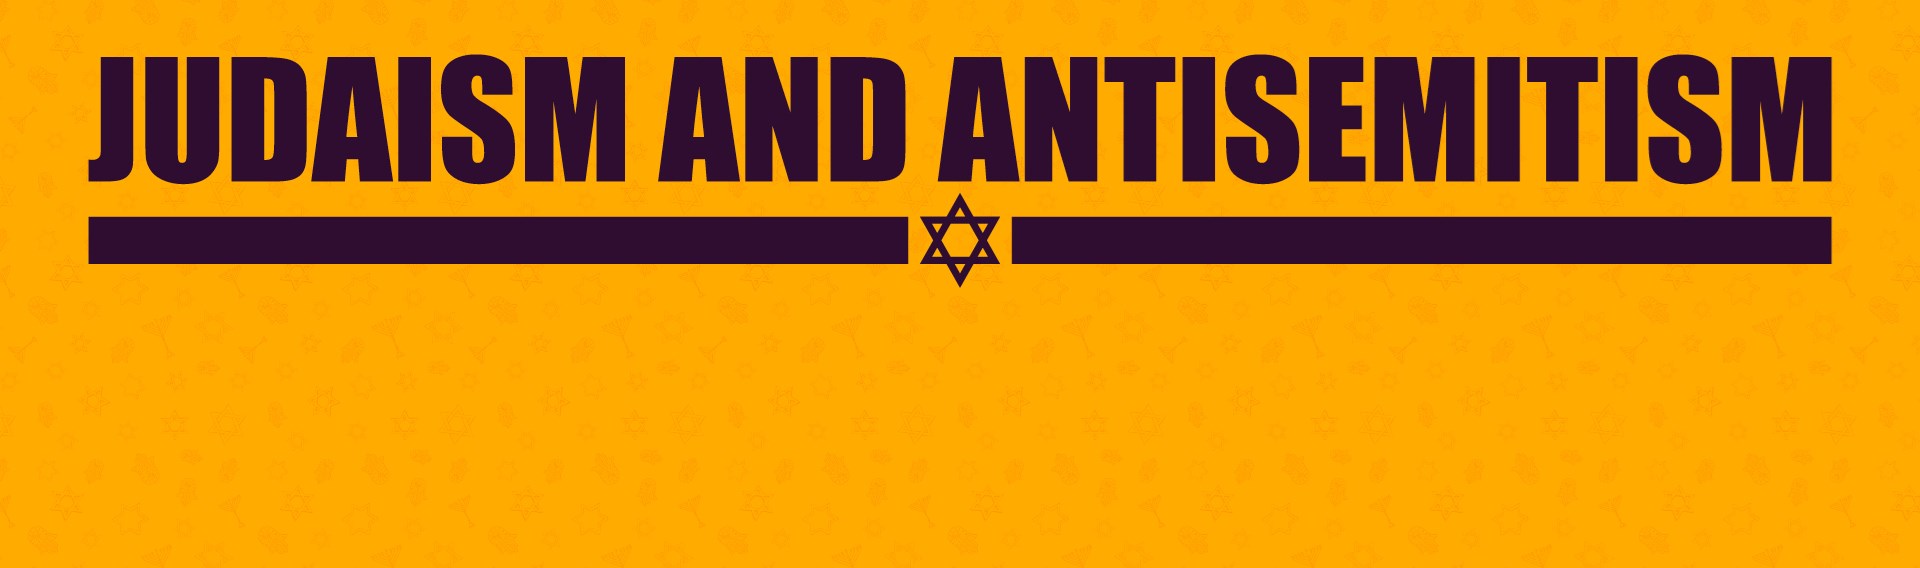 Judaism and Antisemitism